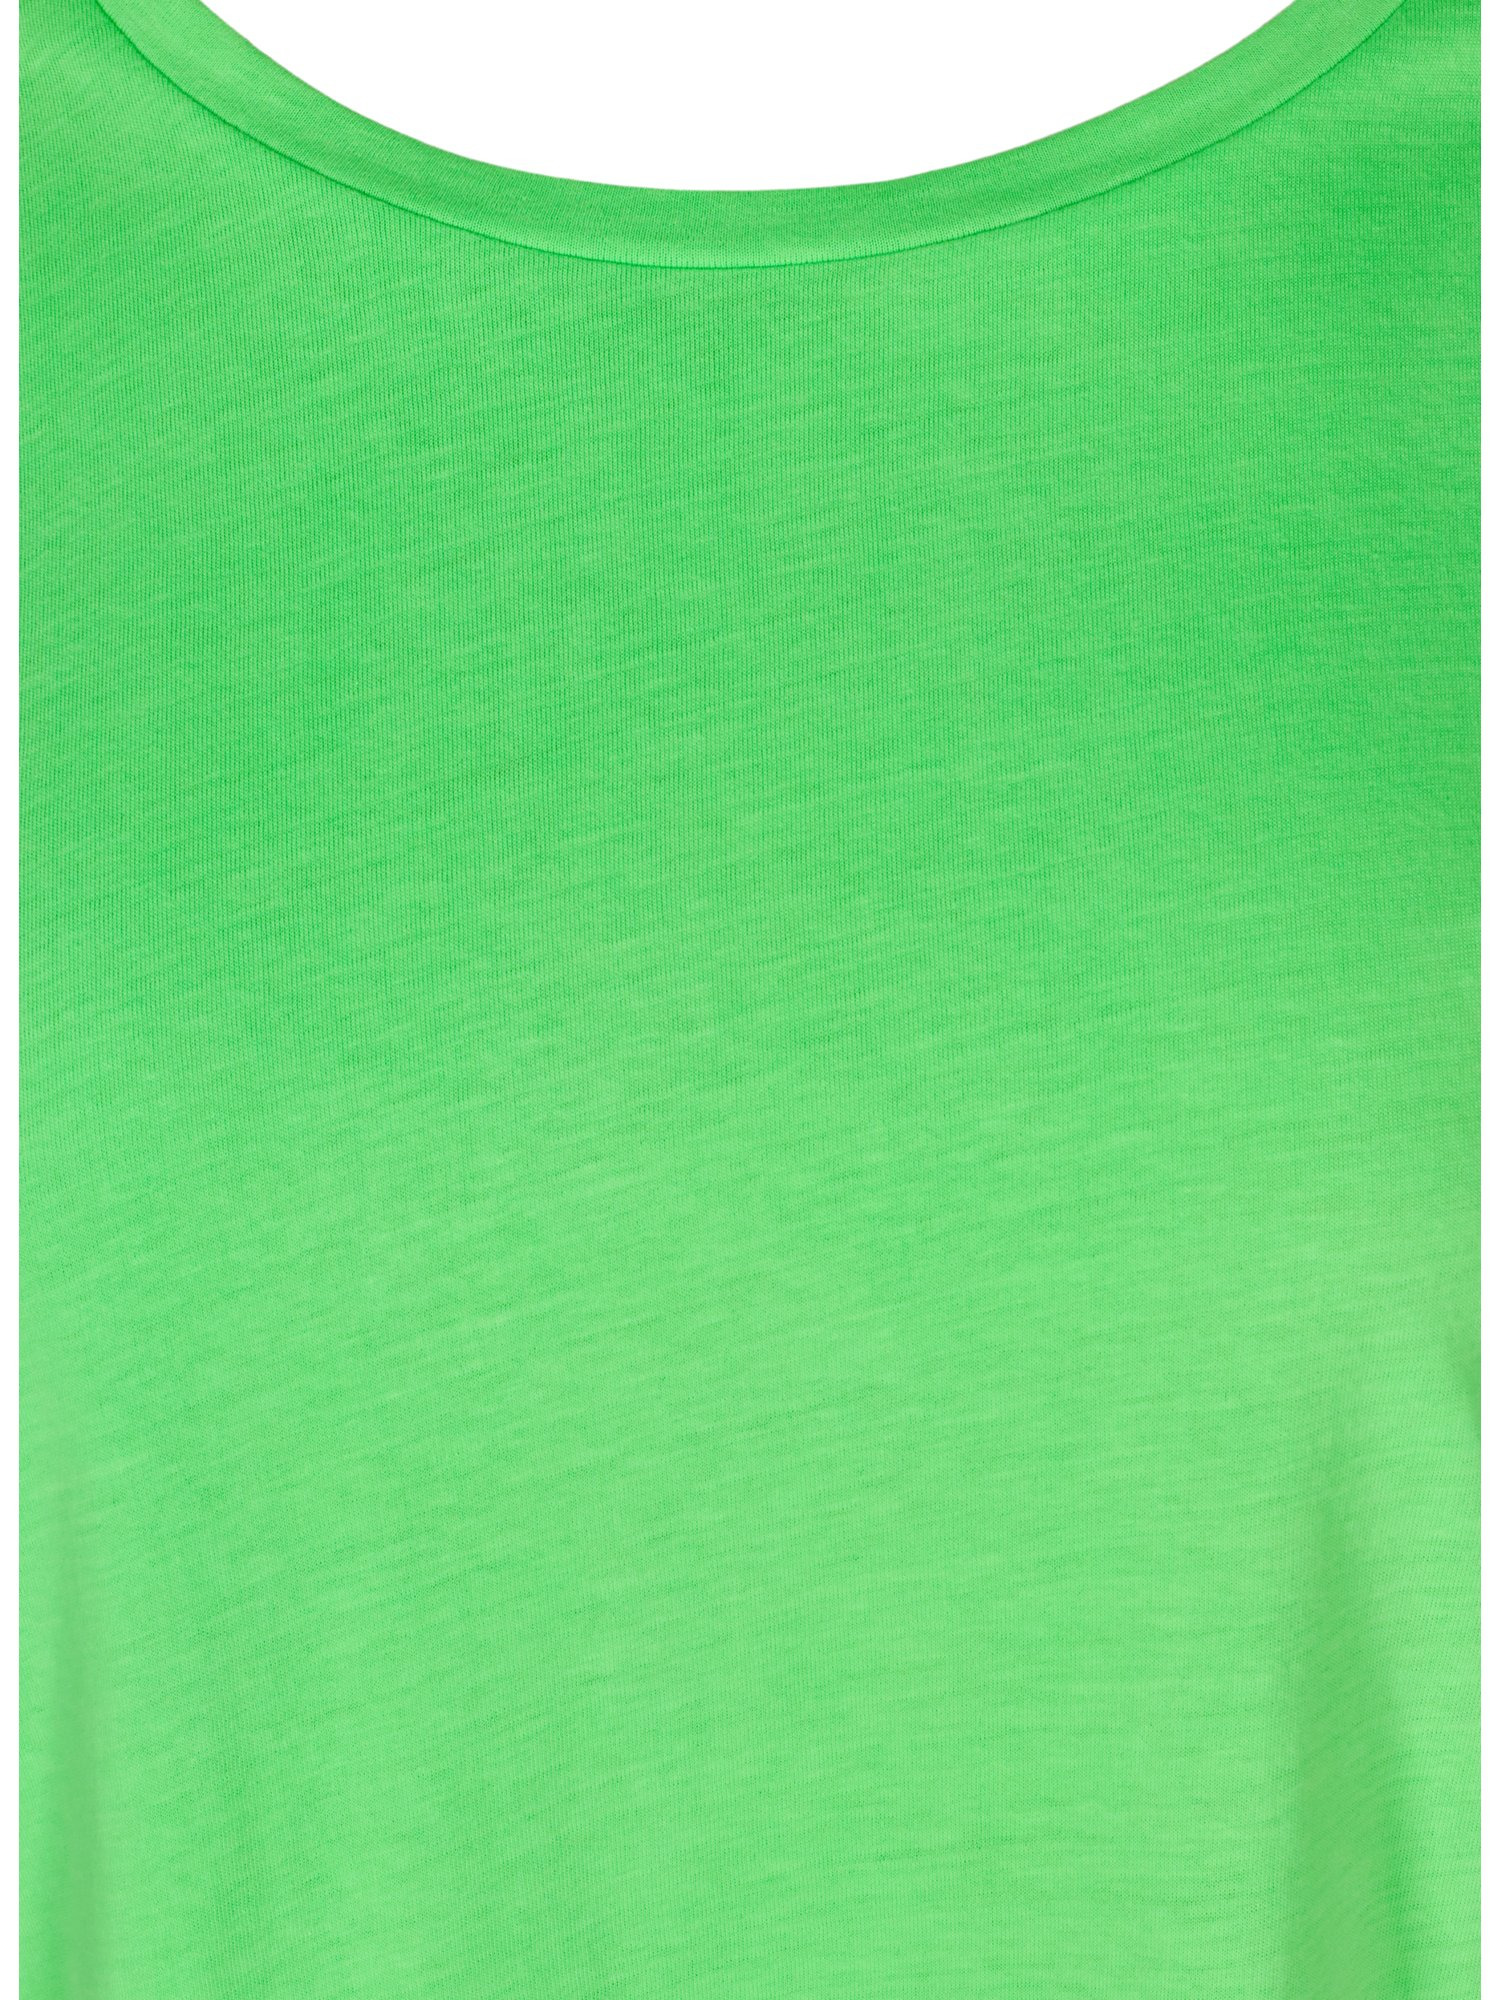 Odzież Lz7j7 Zizzi Koszulka Mkatja w kolorze Limonkam 